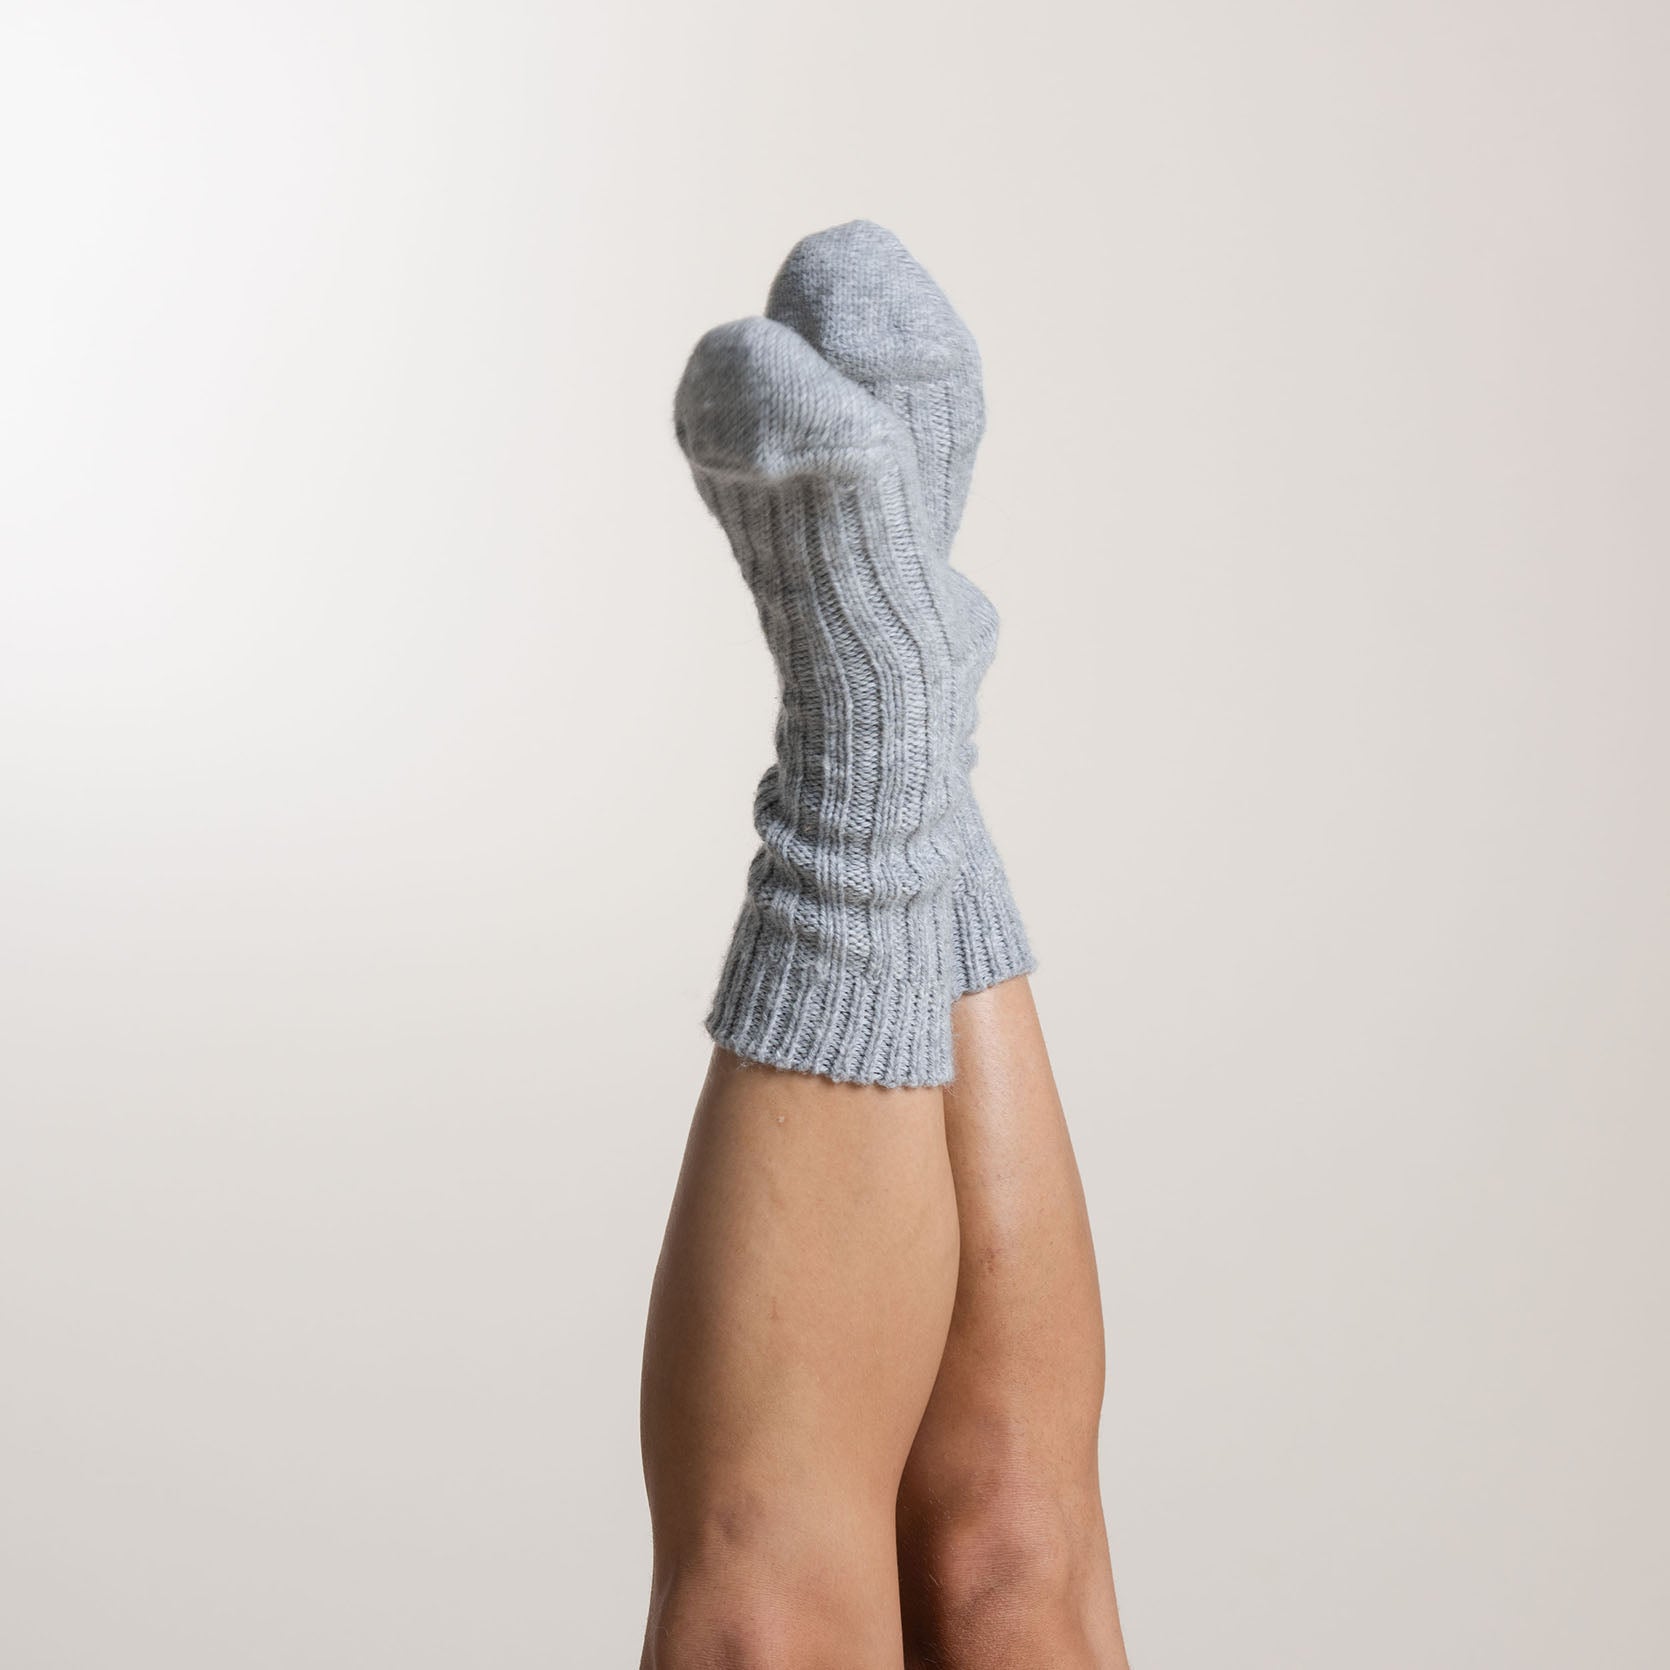 Unisex Alpaka Socken in hell grau. Alpaka wird auch als "Faser der Götter" bezeichnet und ist antibakteriell, langlebig und temperaturregulierend.